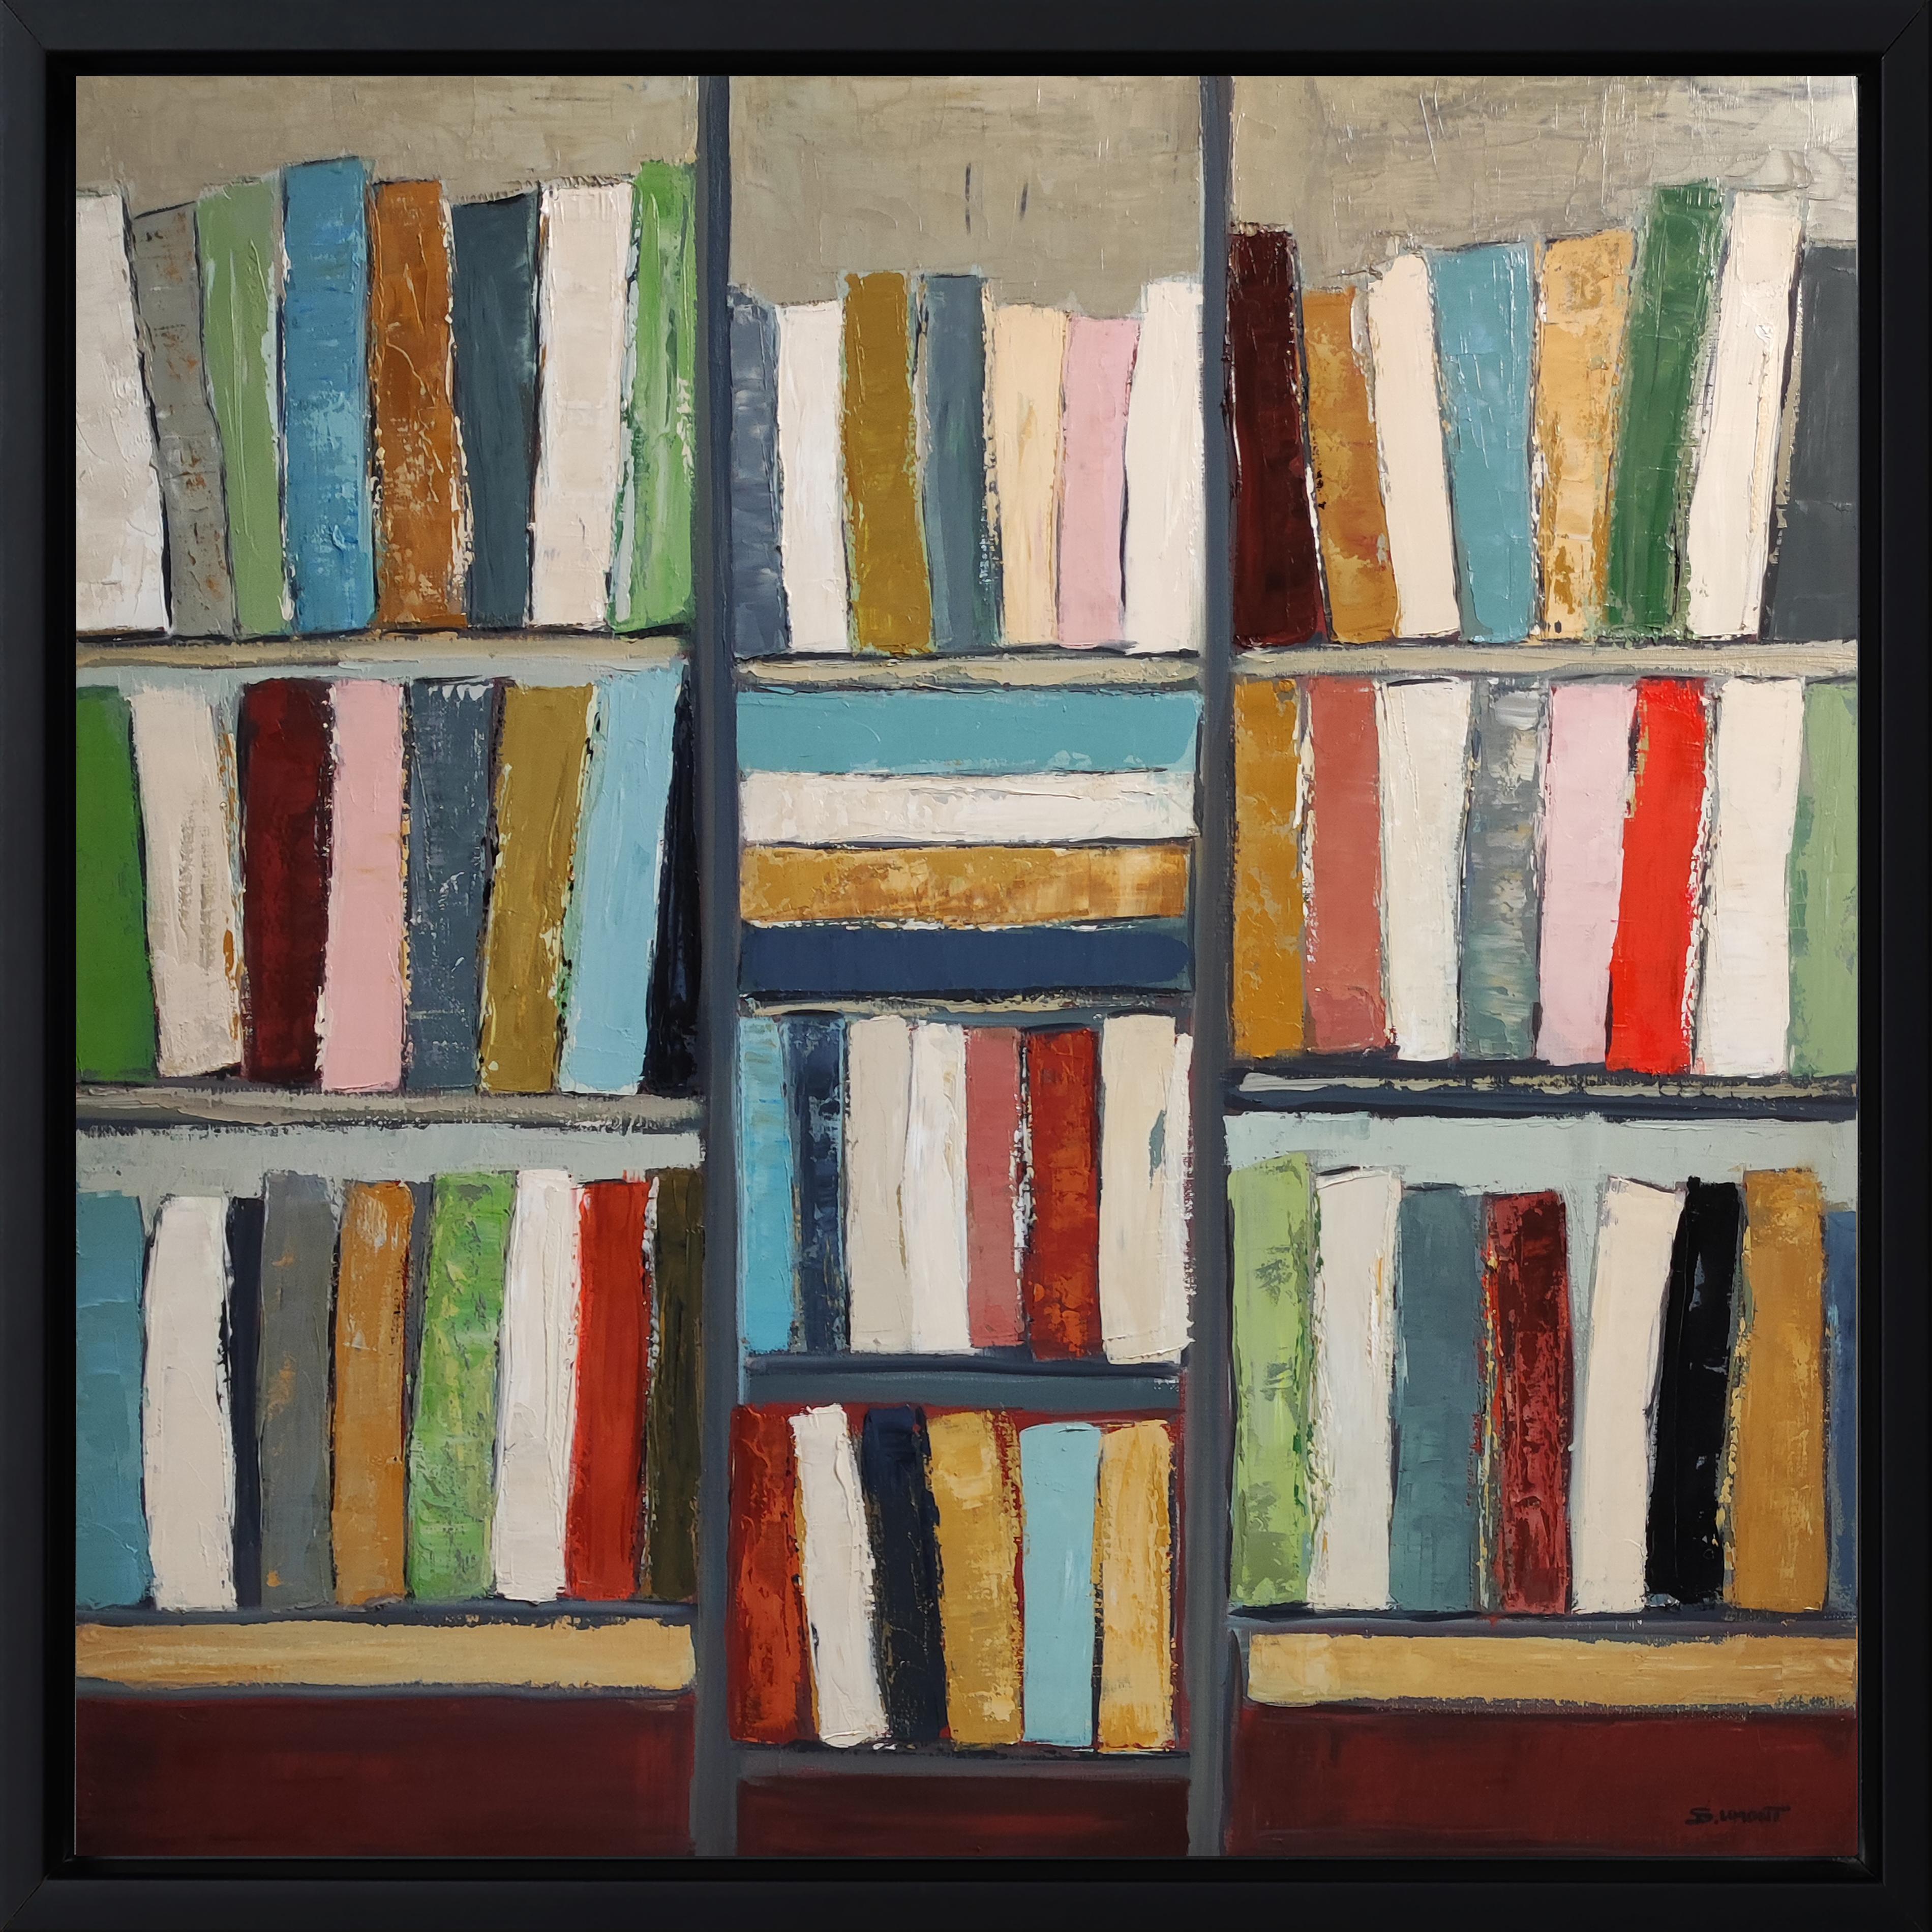 Literarische Wellen, Stillleben, Bücher, Bibliothek, Französisch, Expressionismus, Contemporary – Painting von SOPHIE DUMONT